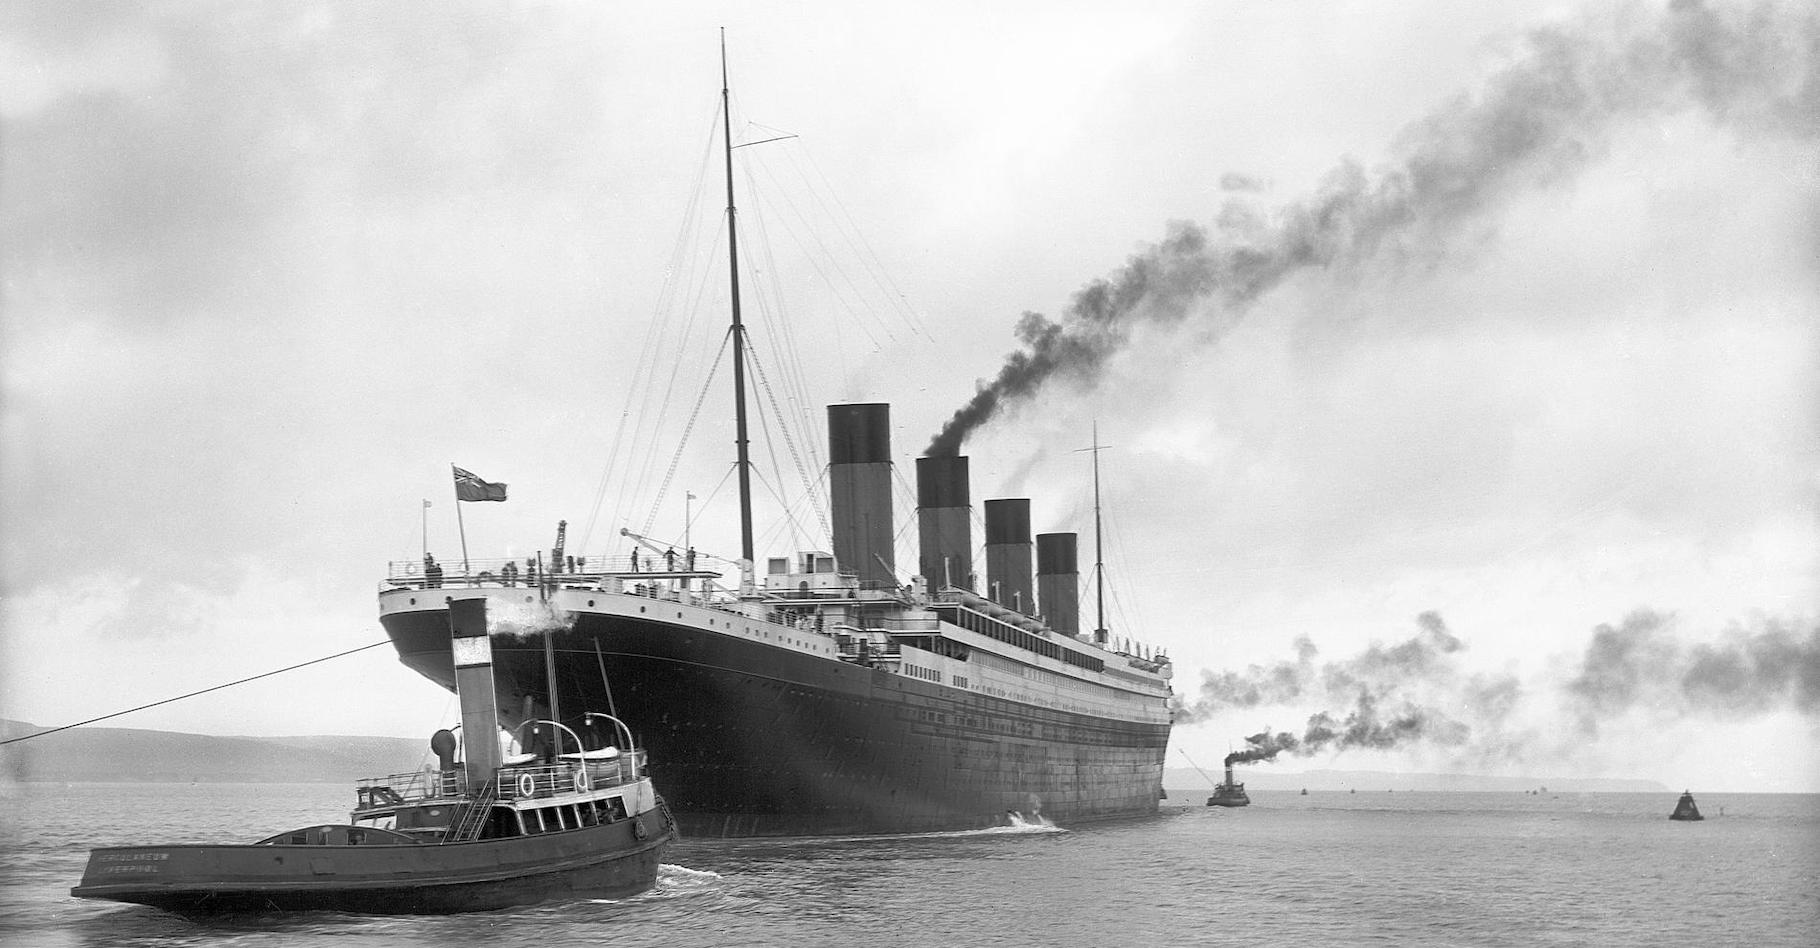 Le Titanic à son départ de Belfast, le 2 avril 1912. Un peu plus de dix jours avant son naufrage. © Robert John Welche, Wikipedia, Domaine public